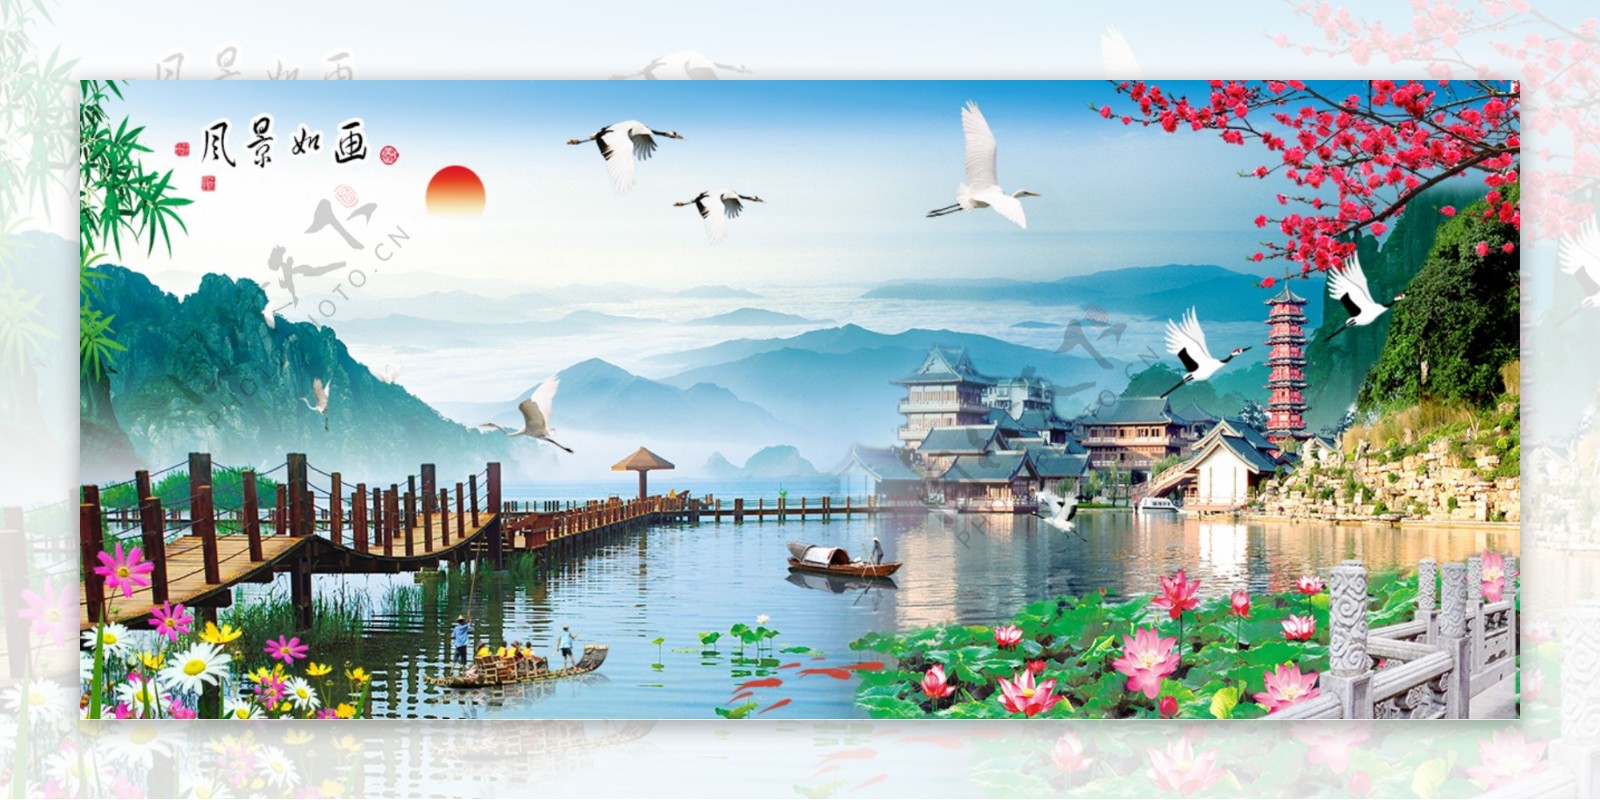 山水画风景画鹤杭州西湖